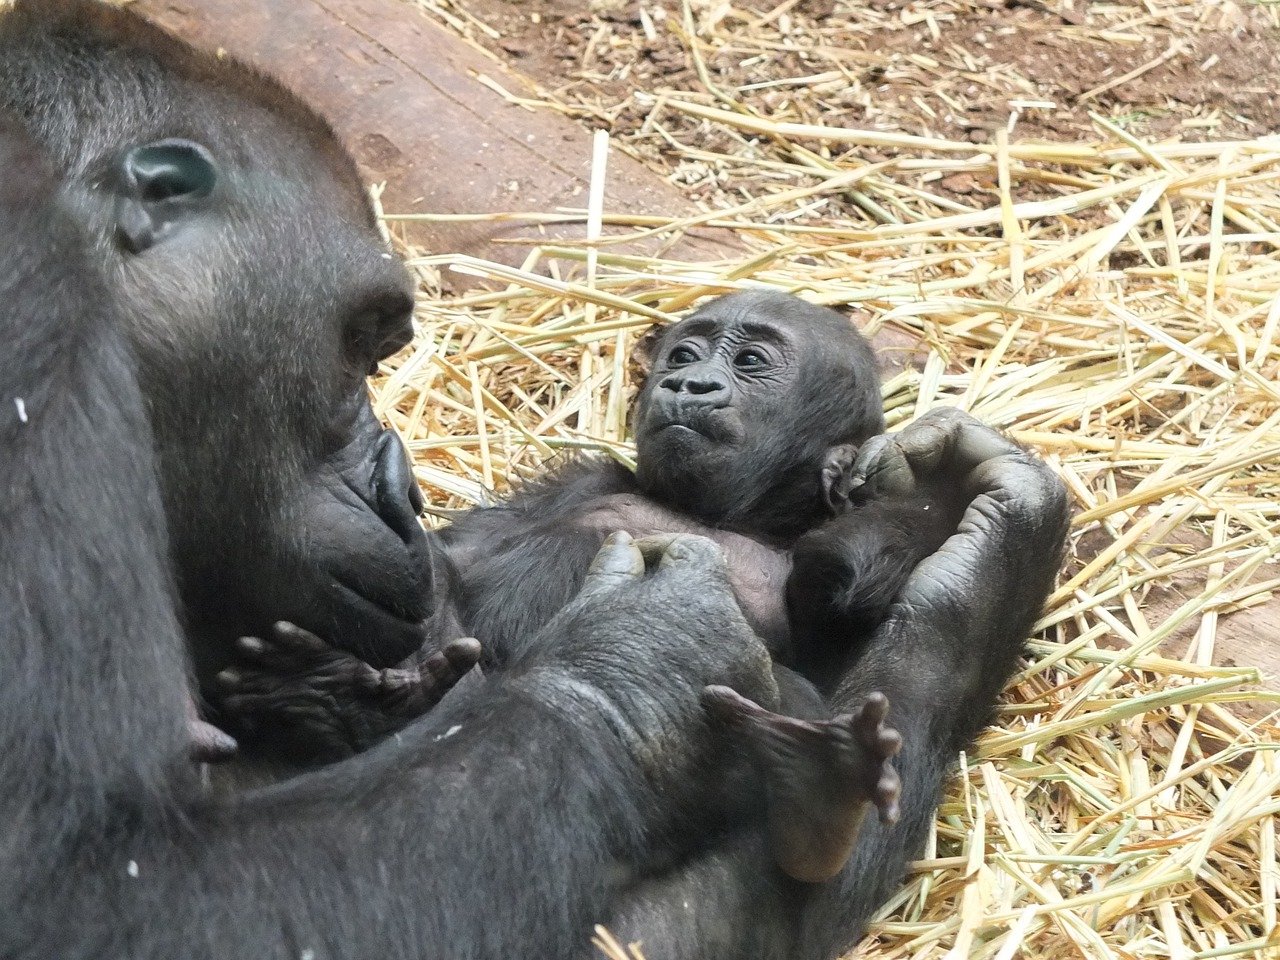 Dojemný okamžik novopečené gorilí matky. Co udělala?